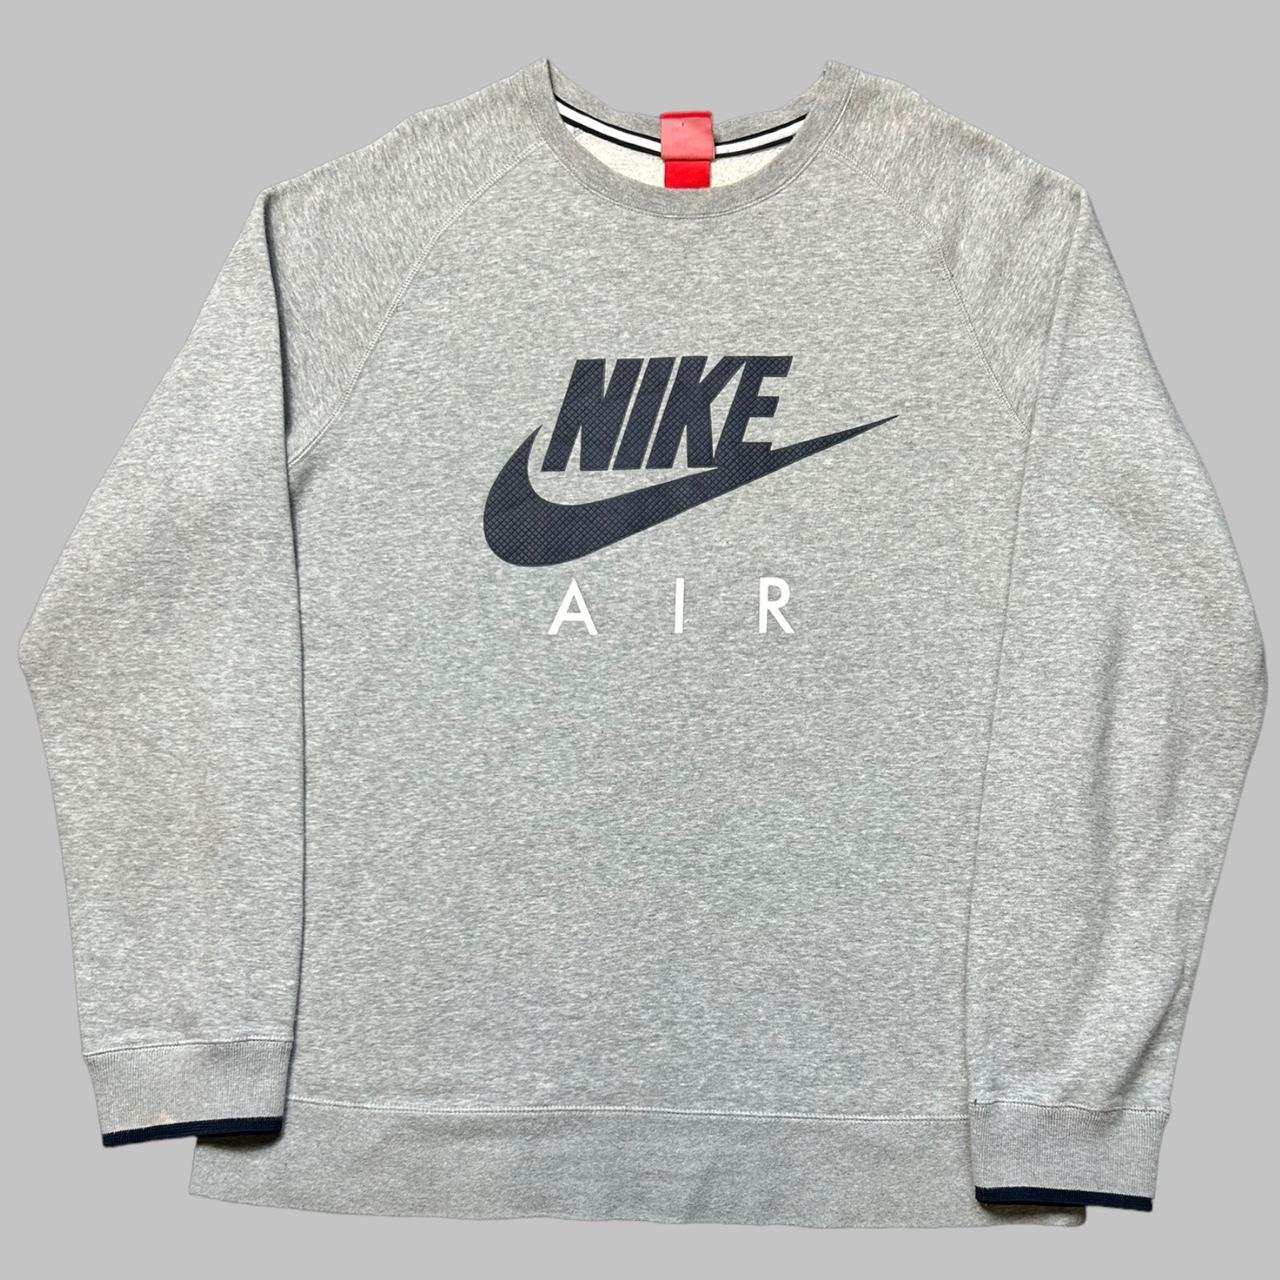 Insane grey Nike sweatshirt Brilliant grey Nike... - Depop